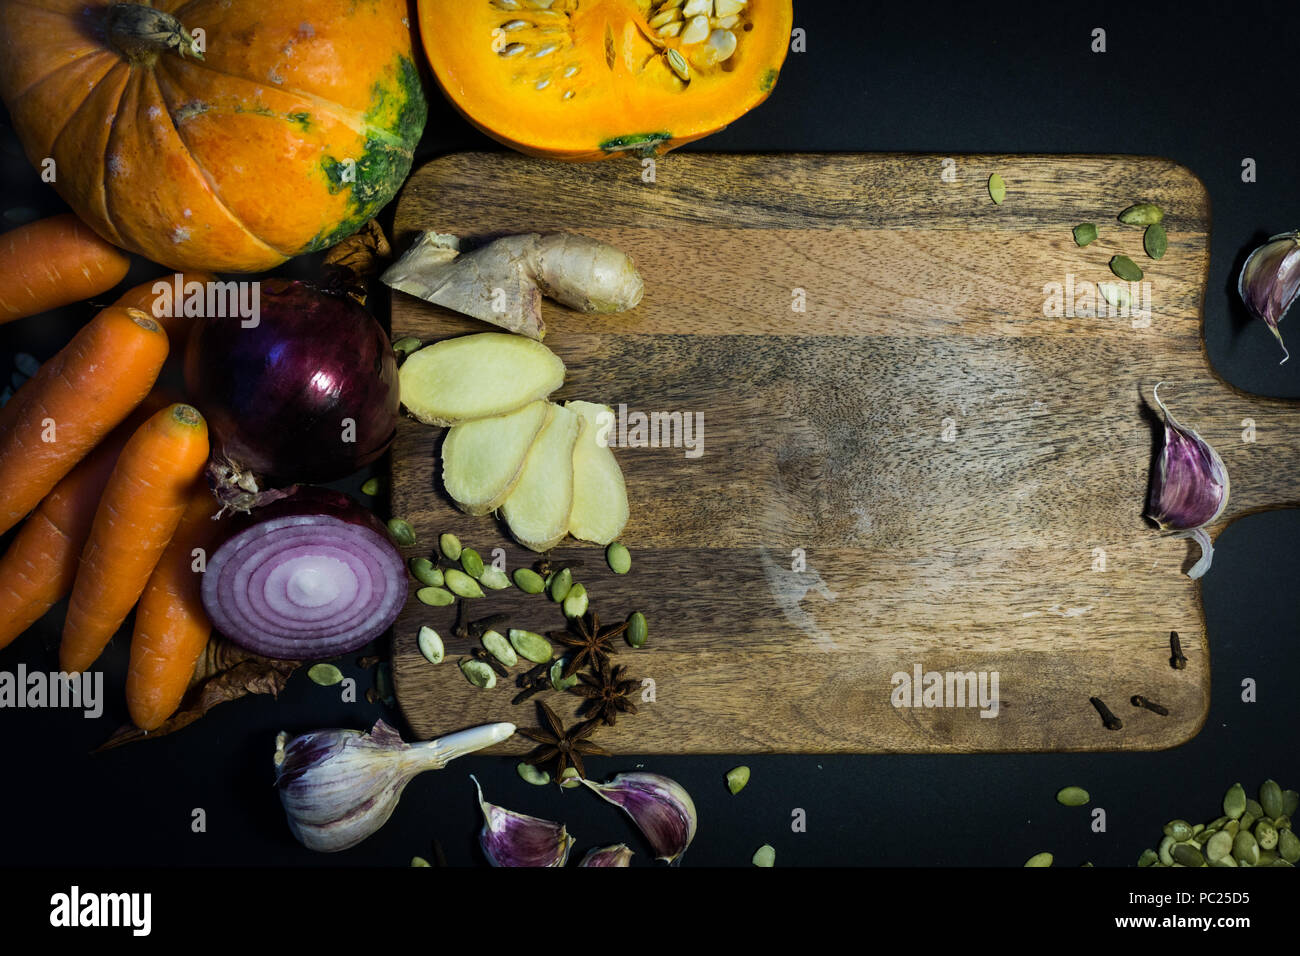 Kürbis und Herbst Gemüse (Karotten, Ingwer, Knoblauch, Zwiebeln) auf dem Holzbrett. Herbstliche Stimmung. Stockfoto